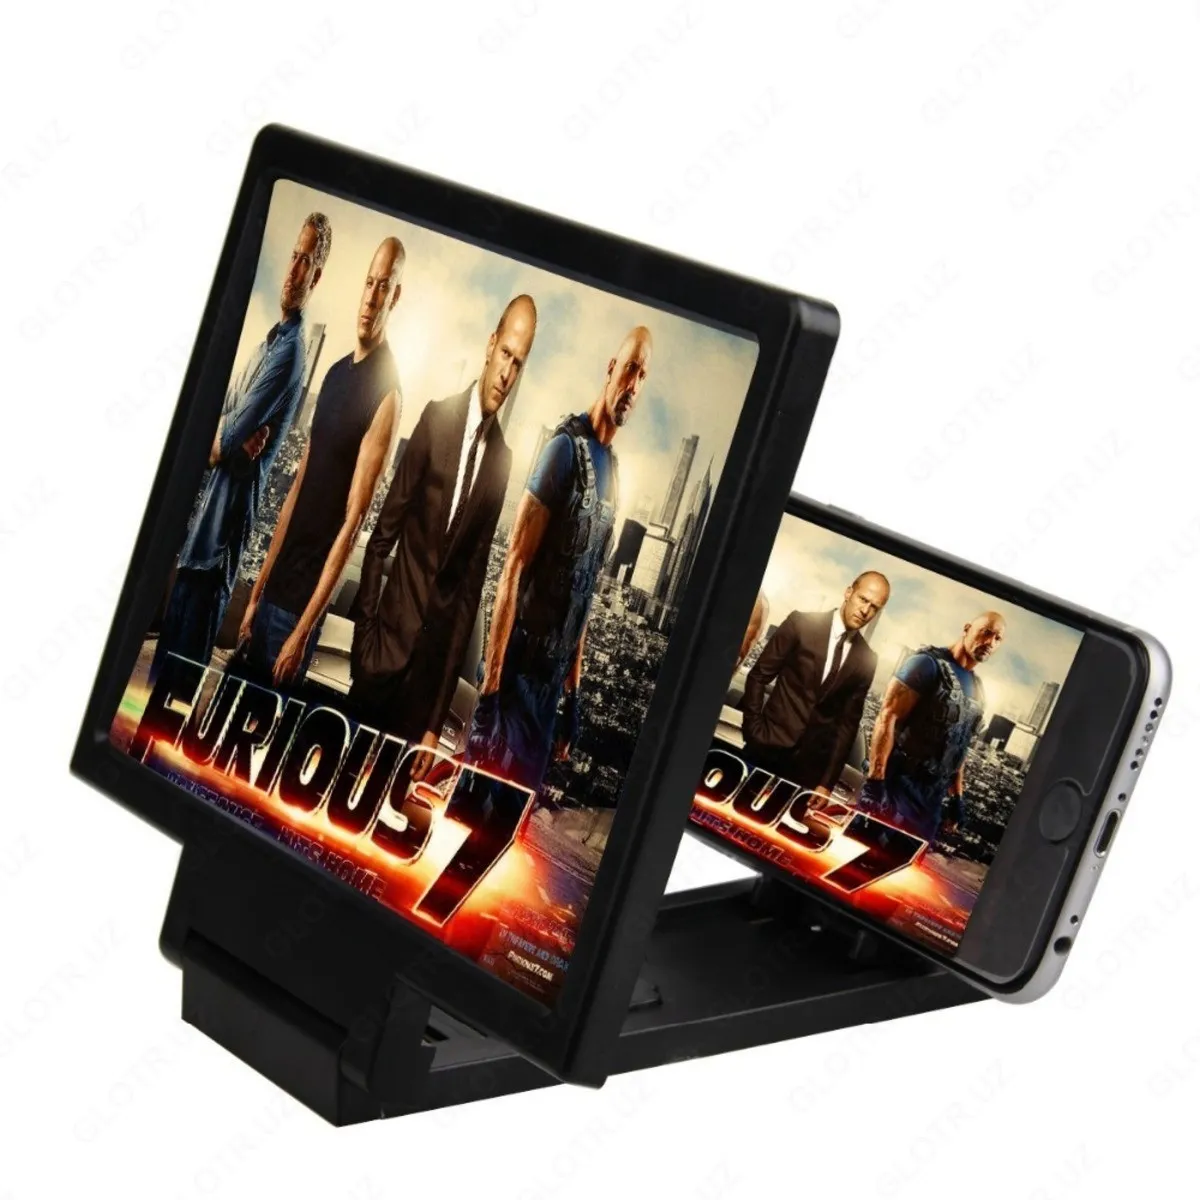 3D telefonlar uchun kattalashtirish ekrani( kattalashtirish oynasi)#1